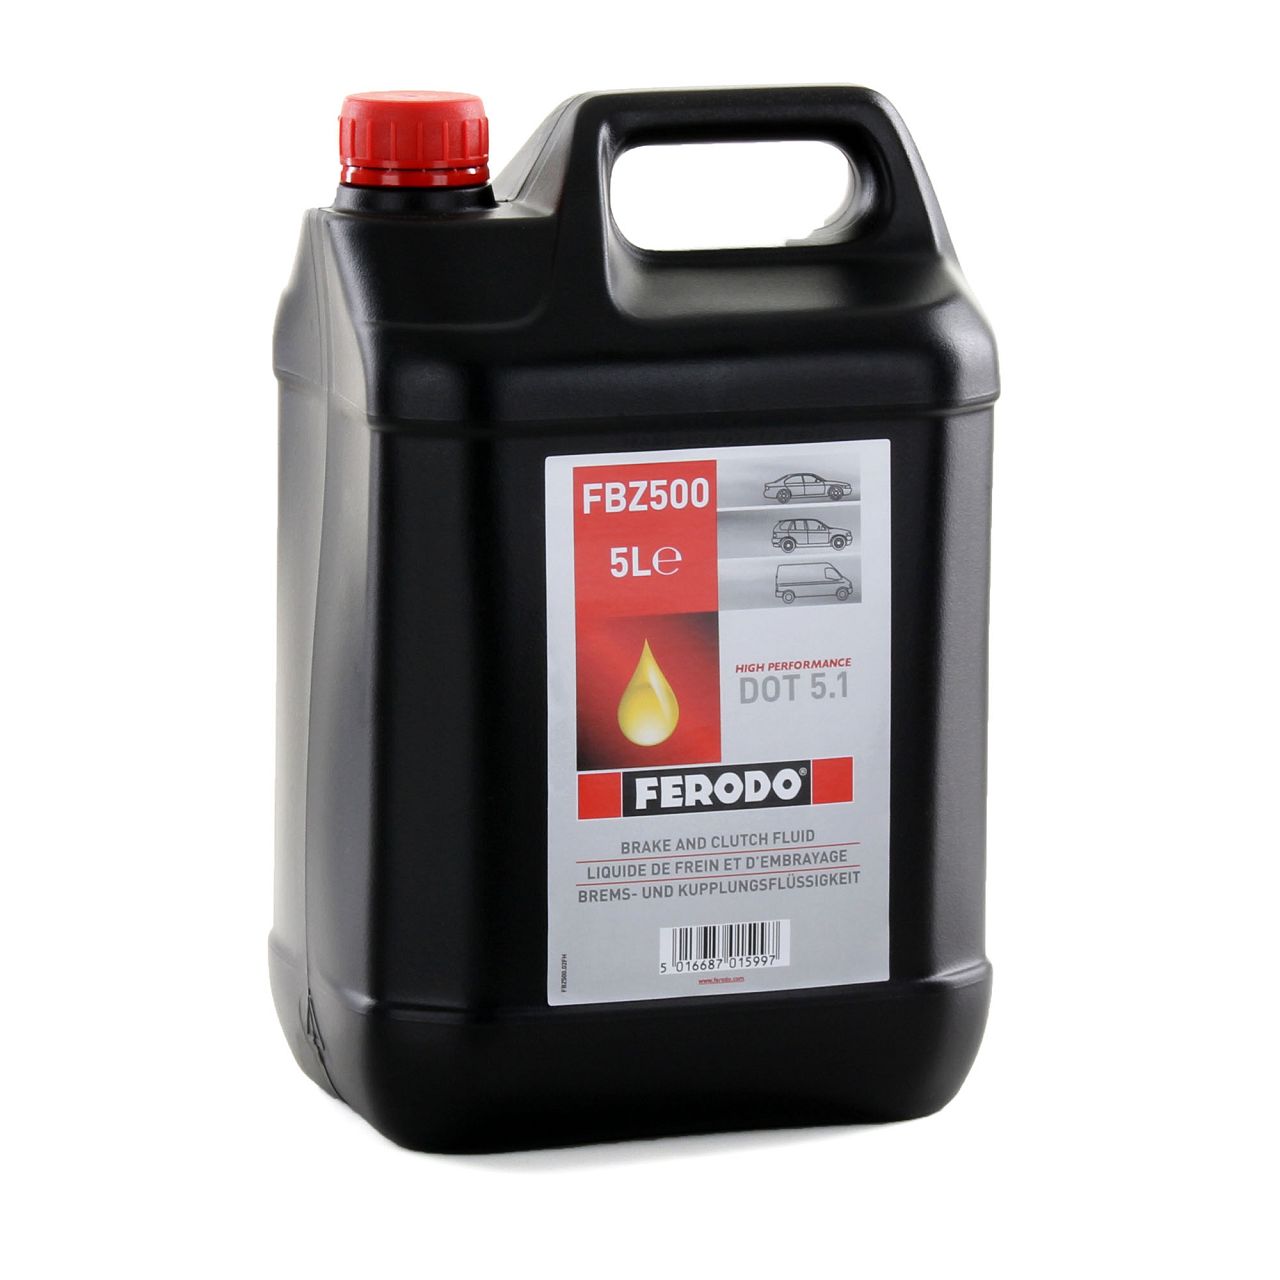 FERODO Bremsflüssigkeit Kupplungsflüssigkeit DOT 5.1 FBZ500 - 5L 5 Liter